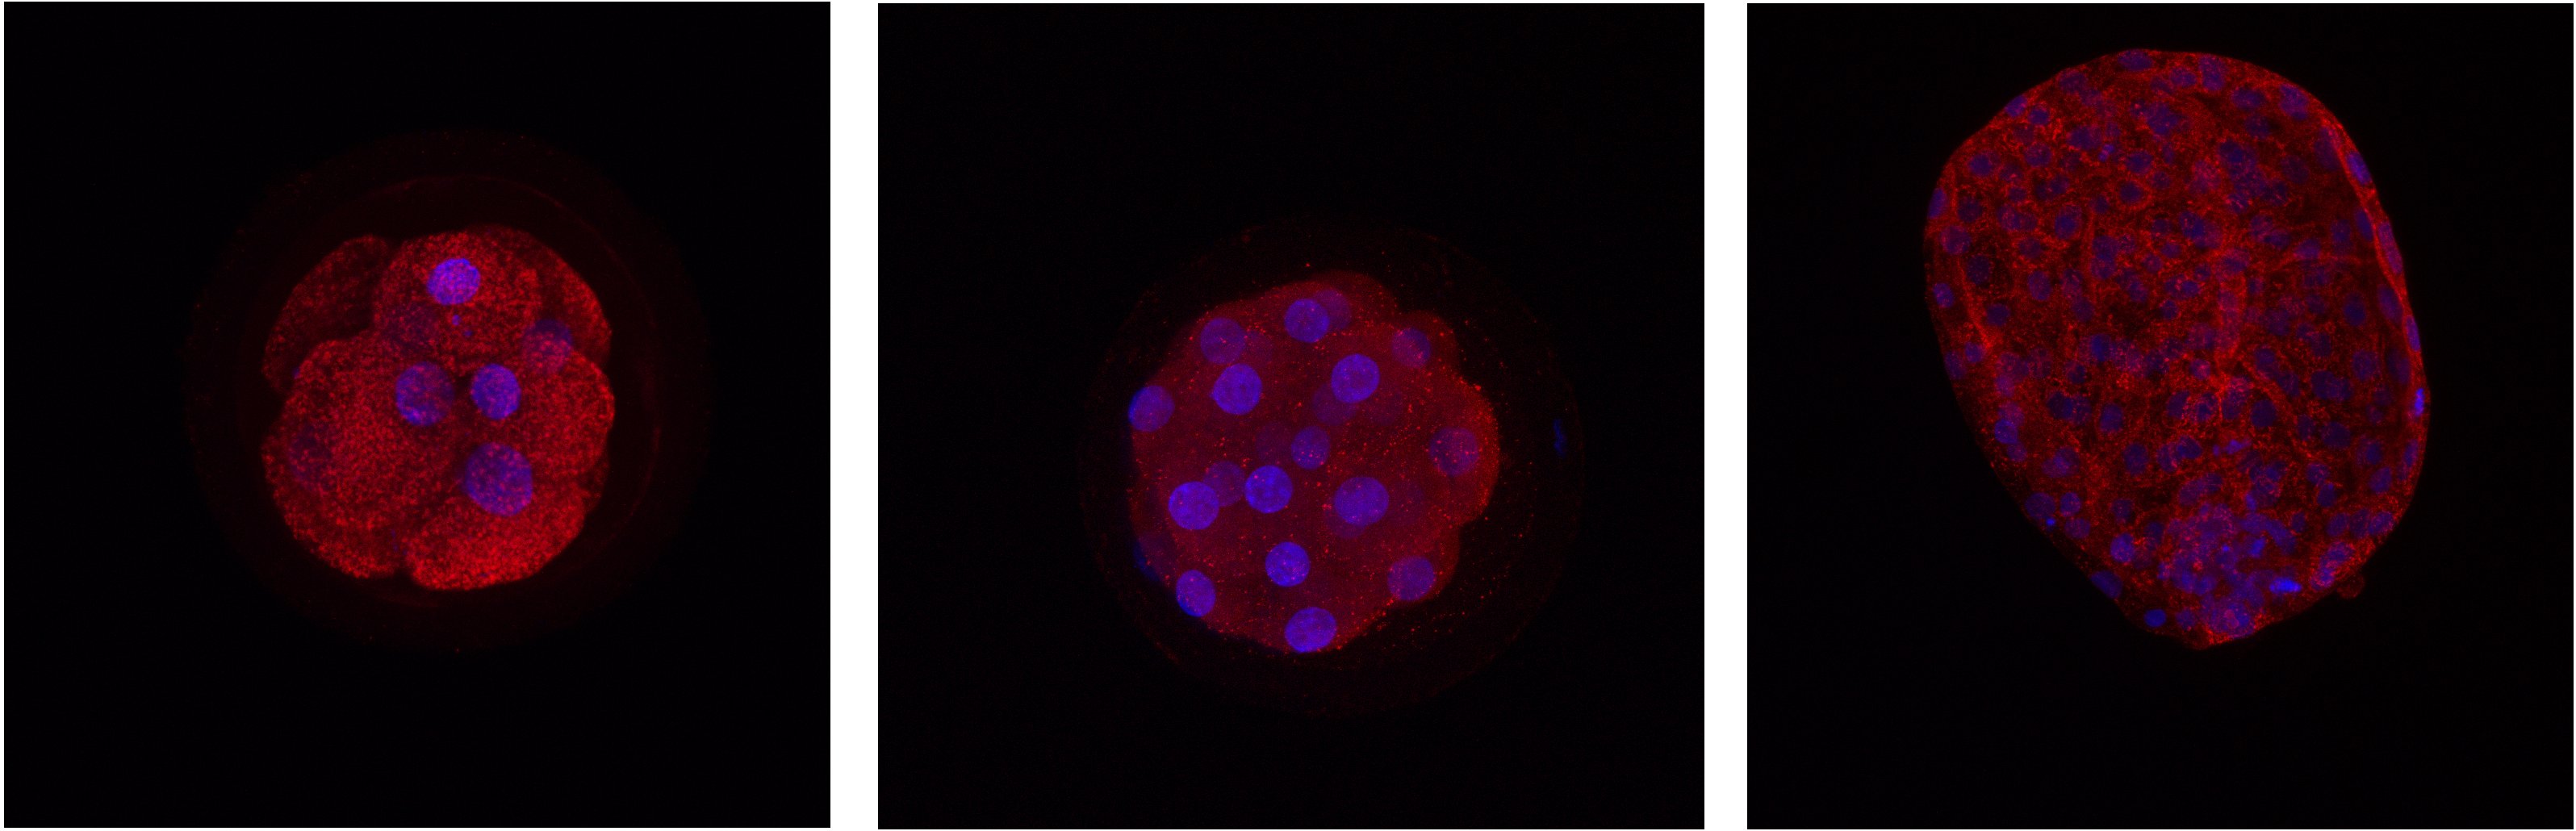 Lokalizace proteinů detekovaných pomocí imunofluorescenční analýzy u různých embryonálních stádií skotu.